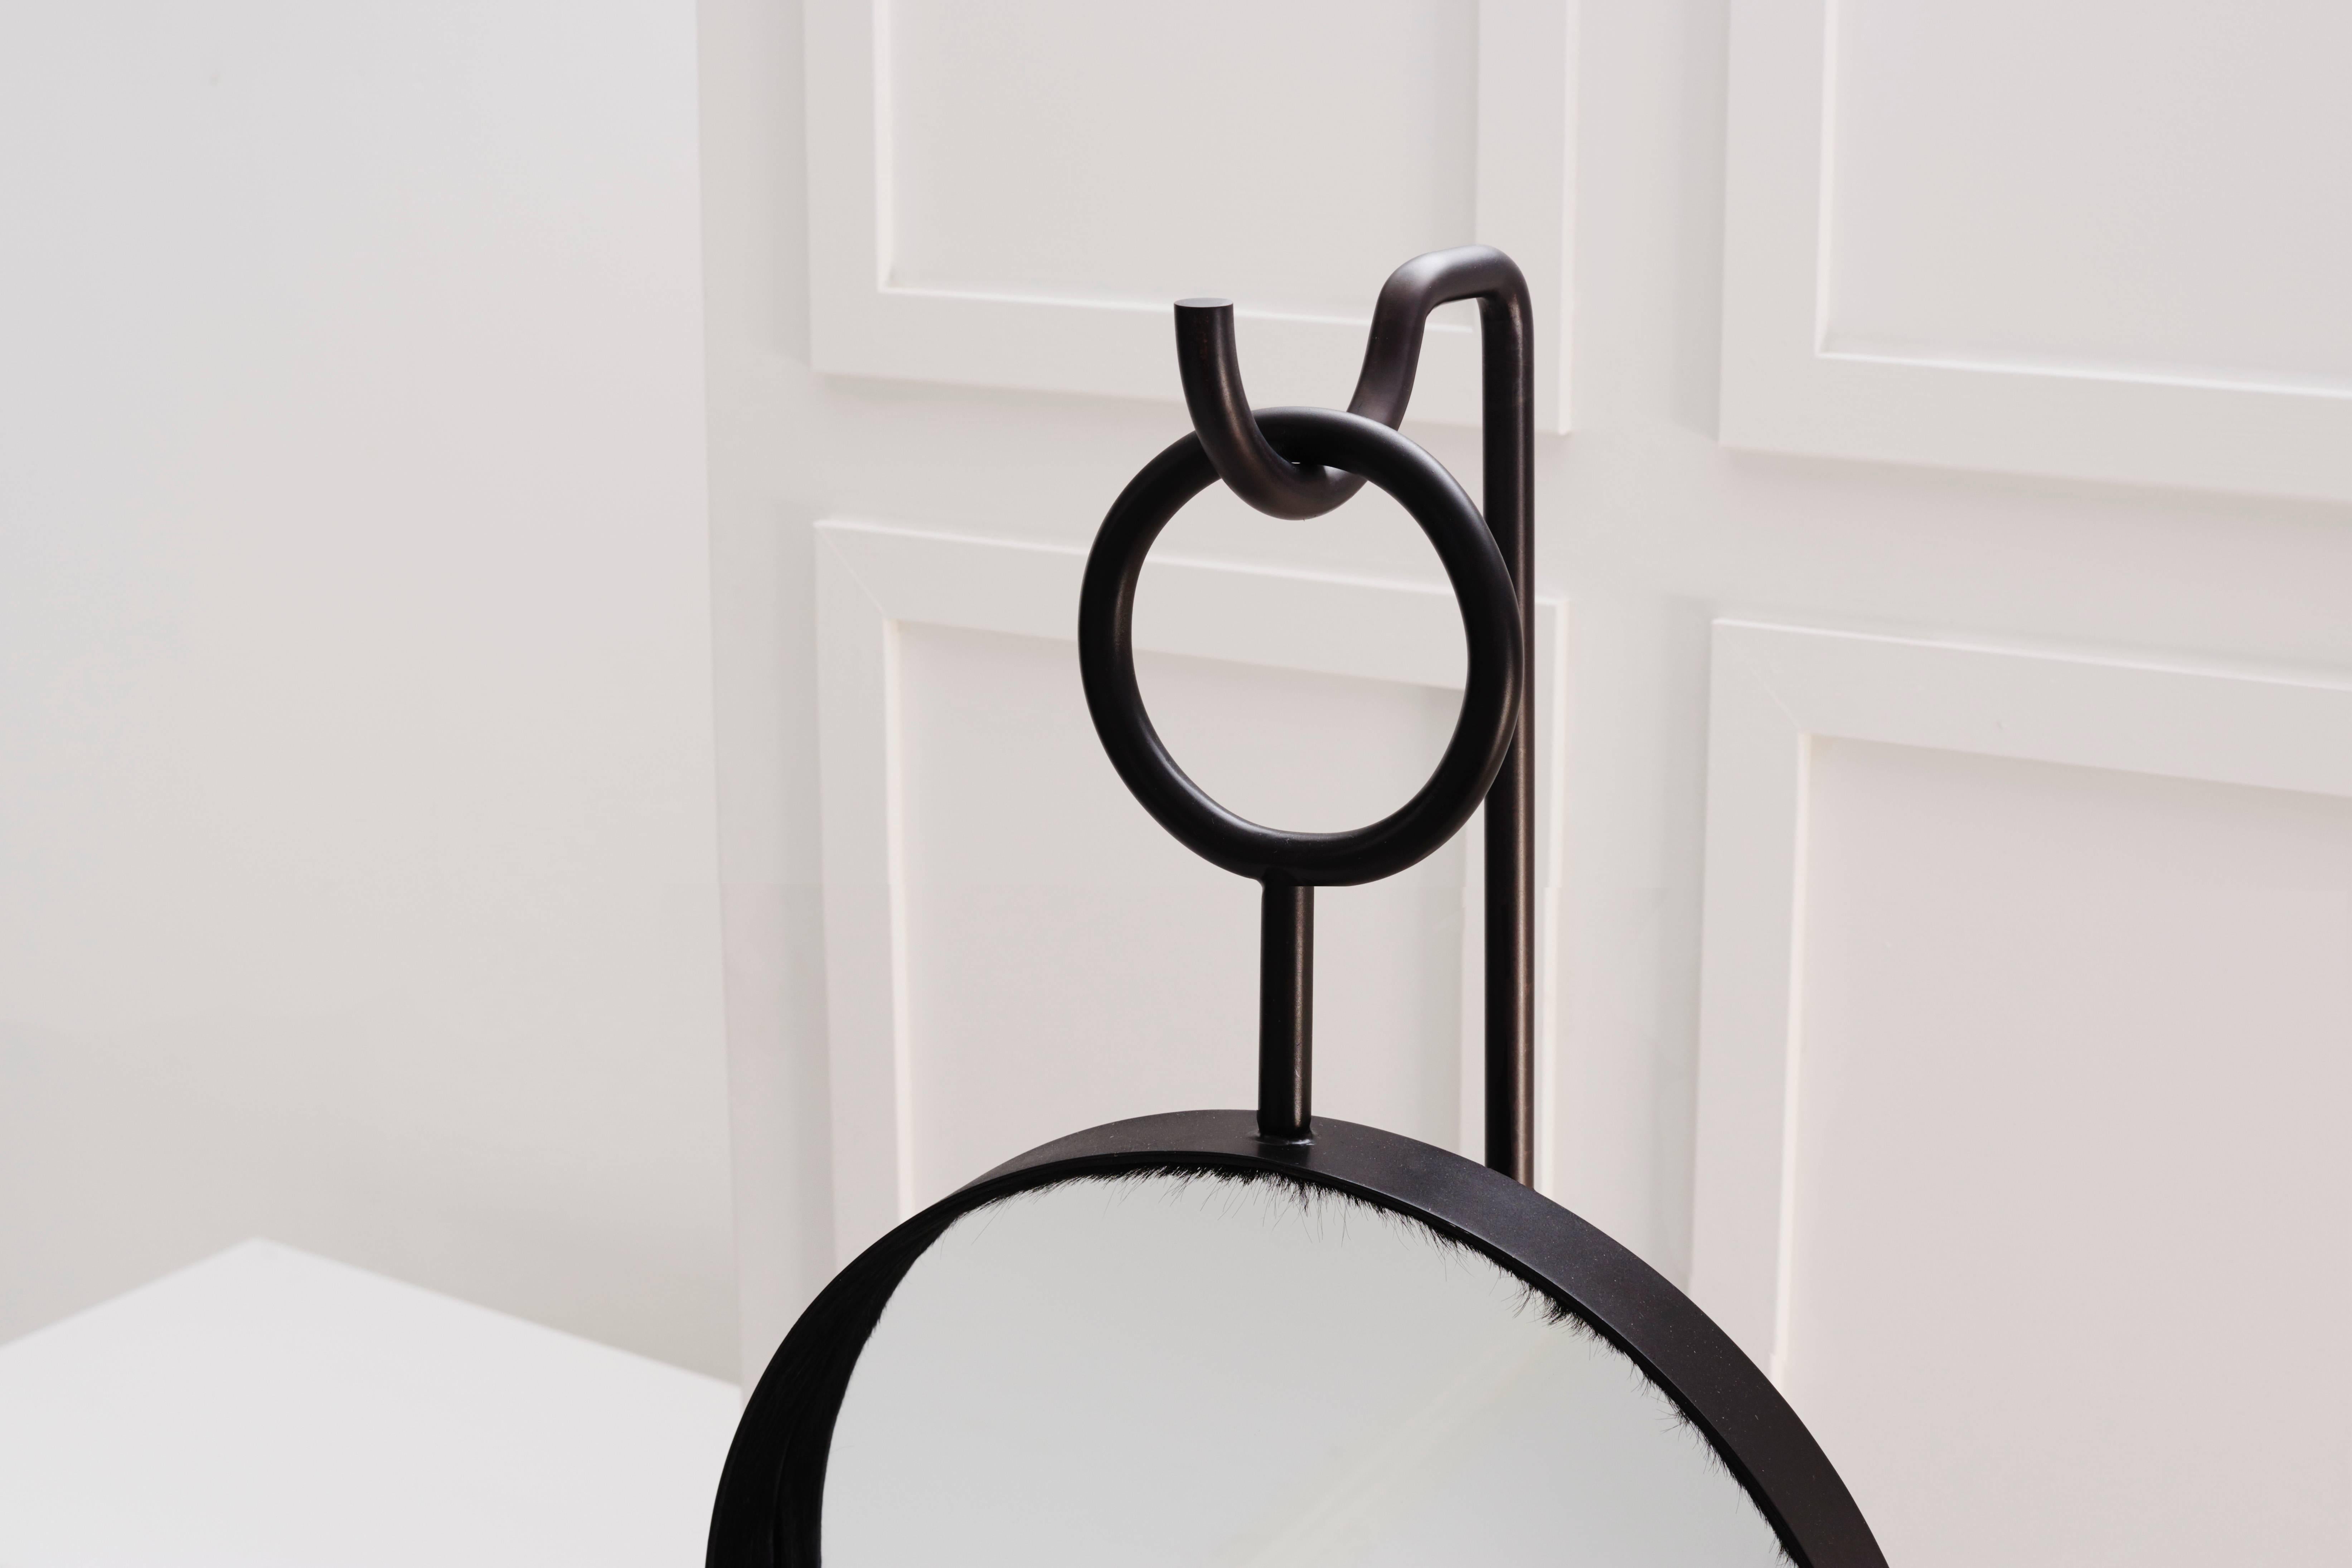 Ein runder Spiegel, der tief in den Rahmen eingelassen ist, hängt an einer Schlaufe vom Haken des dazugehörigen Sockels herab. Dieses skulpturale Stück ist entweder in einem warmen Schwarz oder in antikem Messing handgefertigt.